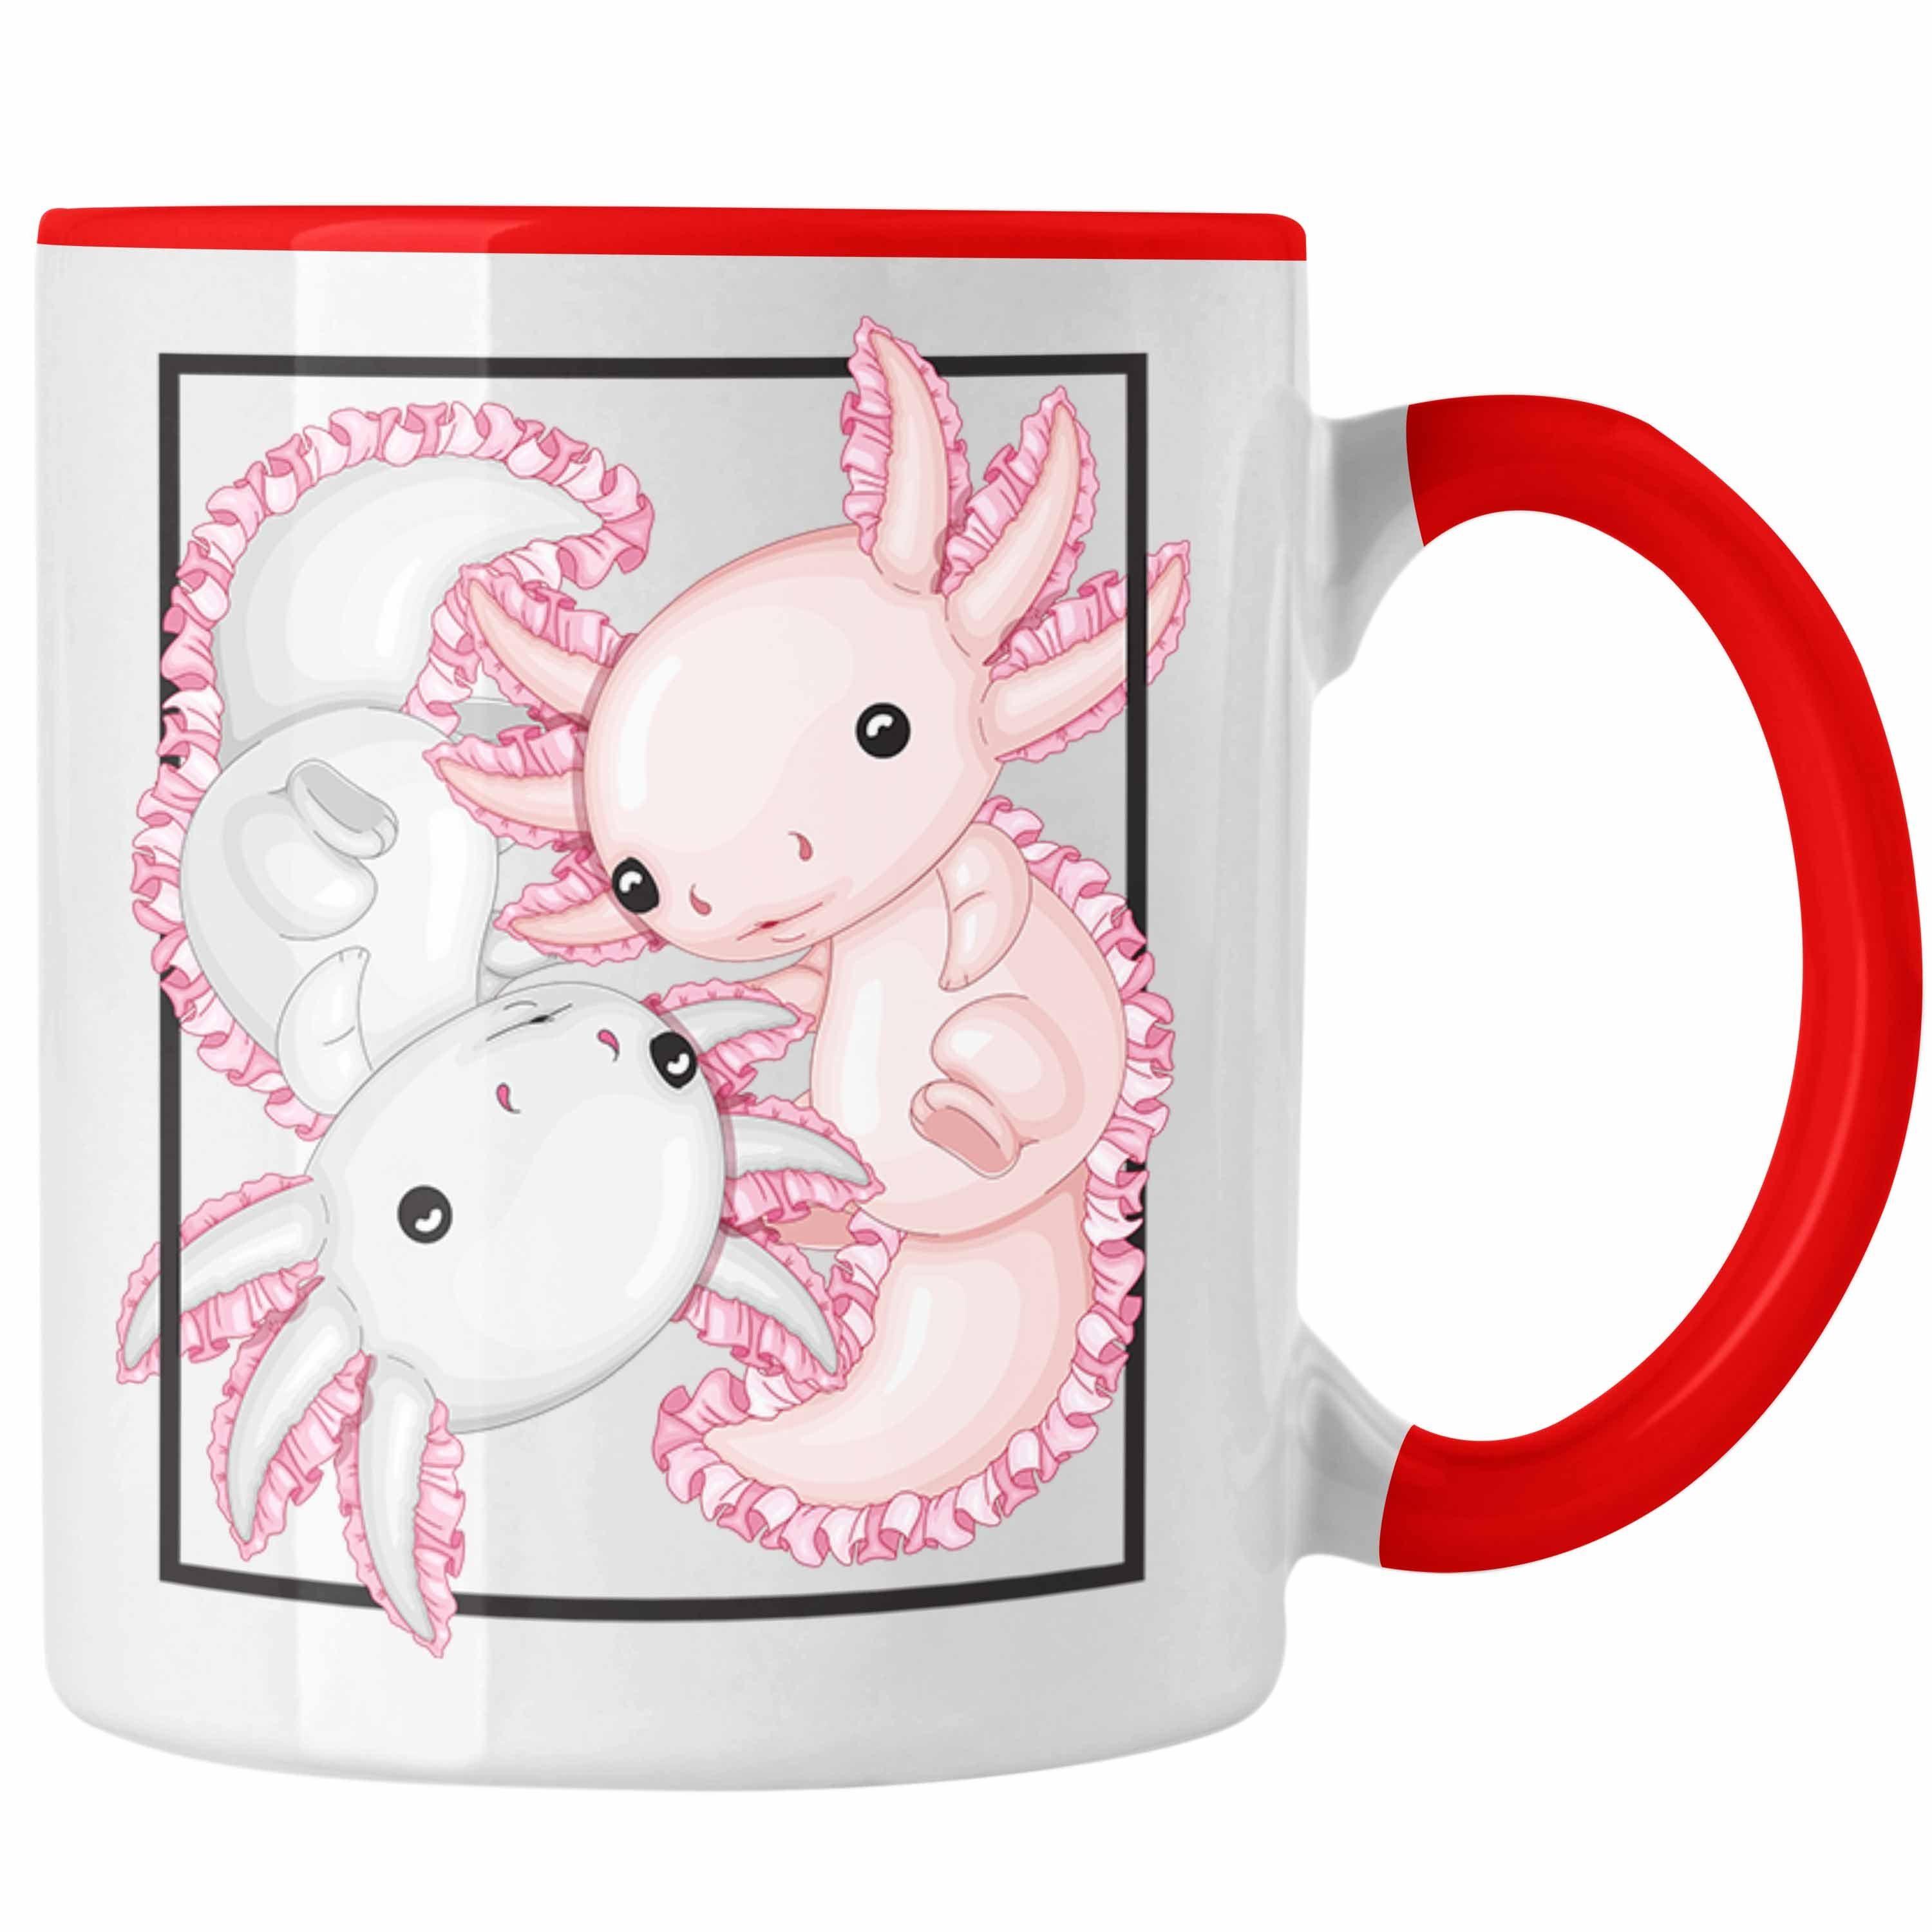 Besitzer Schwanzlurch Trendation Tasse Geschenkidee Axolotl Geschenk Tasse Rot